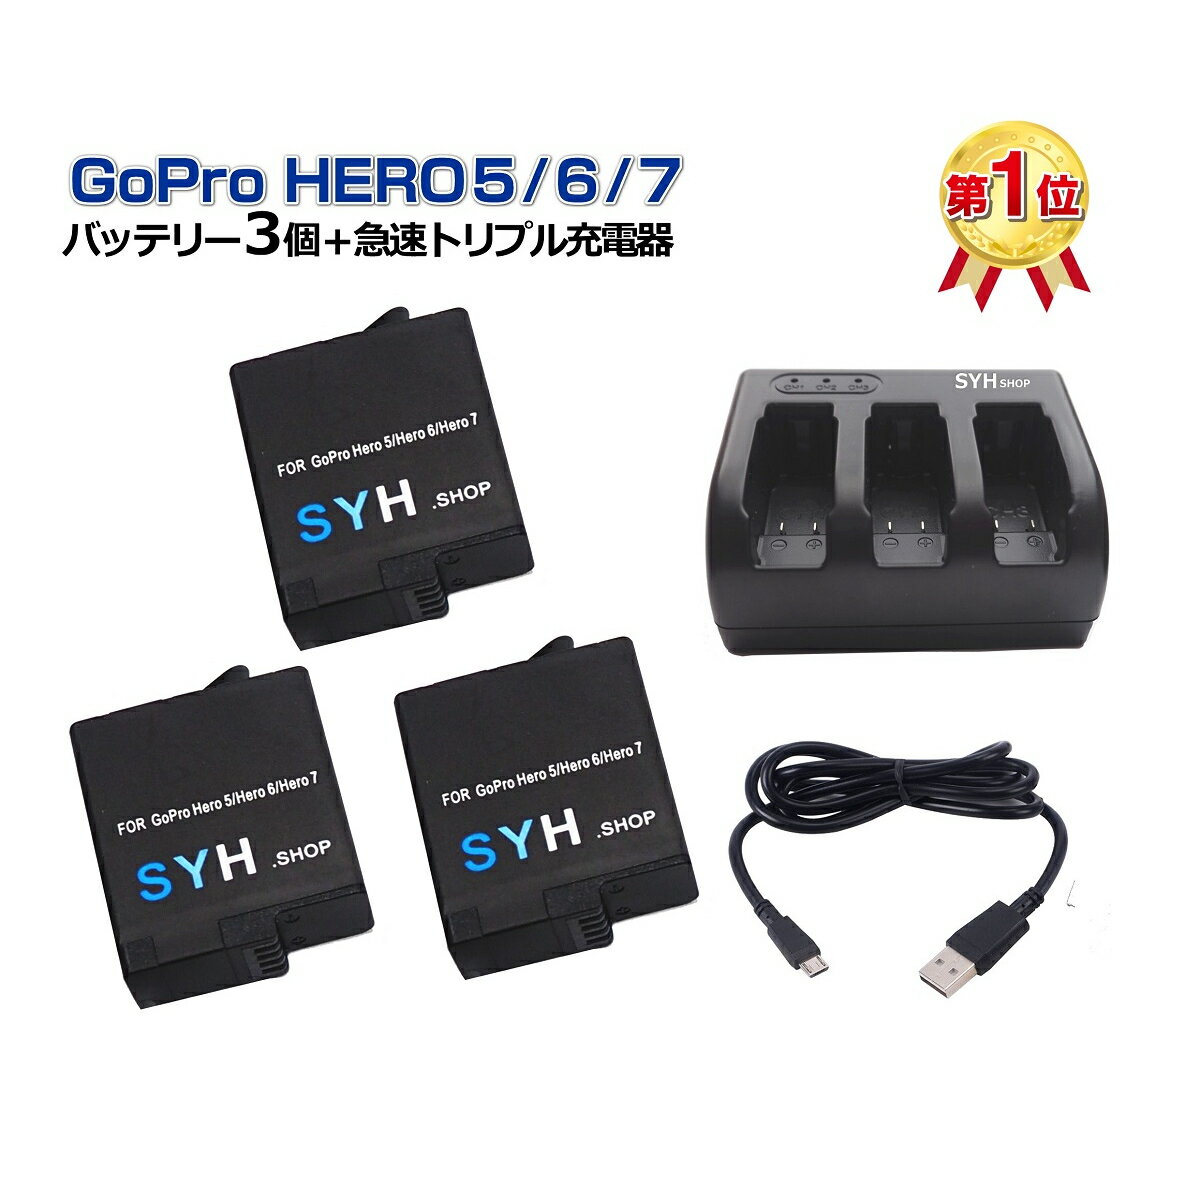 GoPro HERO7 black HERO6 HERO5 black HERO2018 Ή SYH SHOPIWi݊obe[3iیP[Xj{USBgvobe[[d@GoProobe[3}[d\ S-10